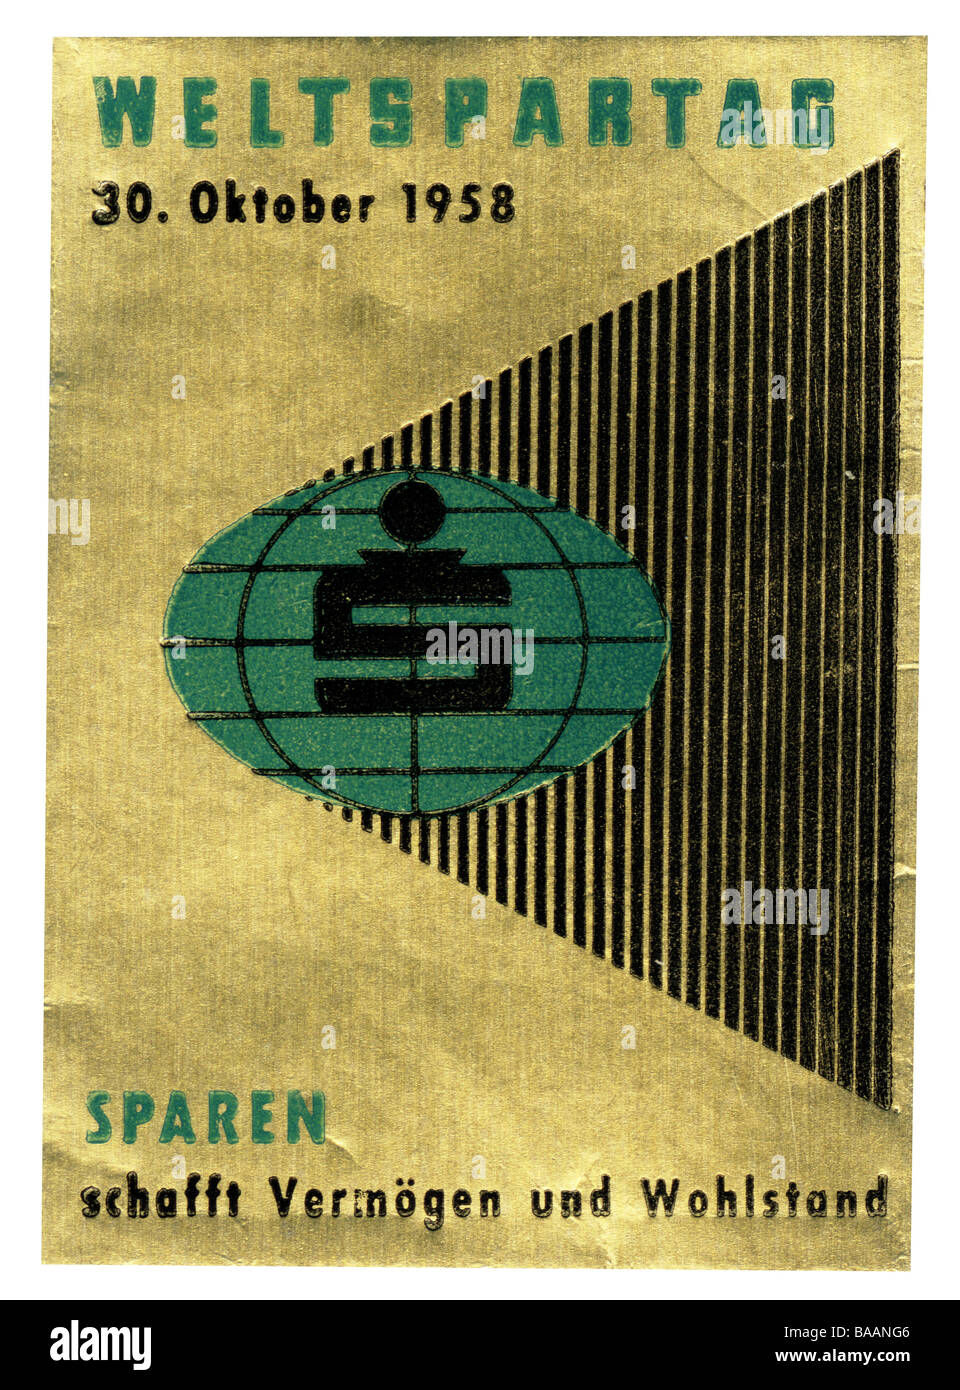 advertising, stamp 'Sparen schafft Vermögen und Wohlstand', World Savings Day, Germany, 30.10.1958, Stock Photo